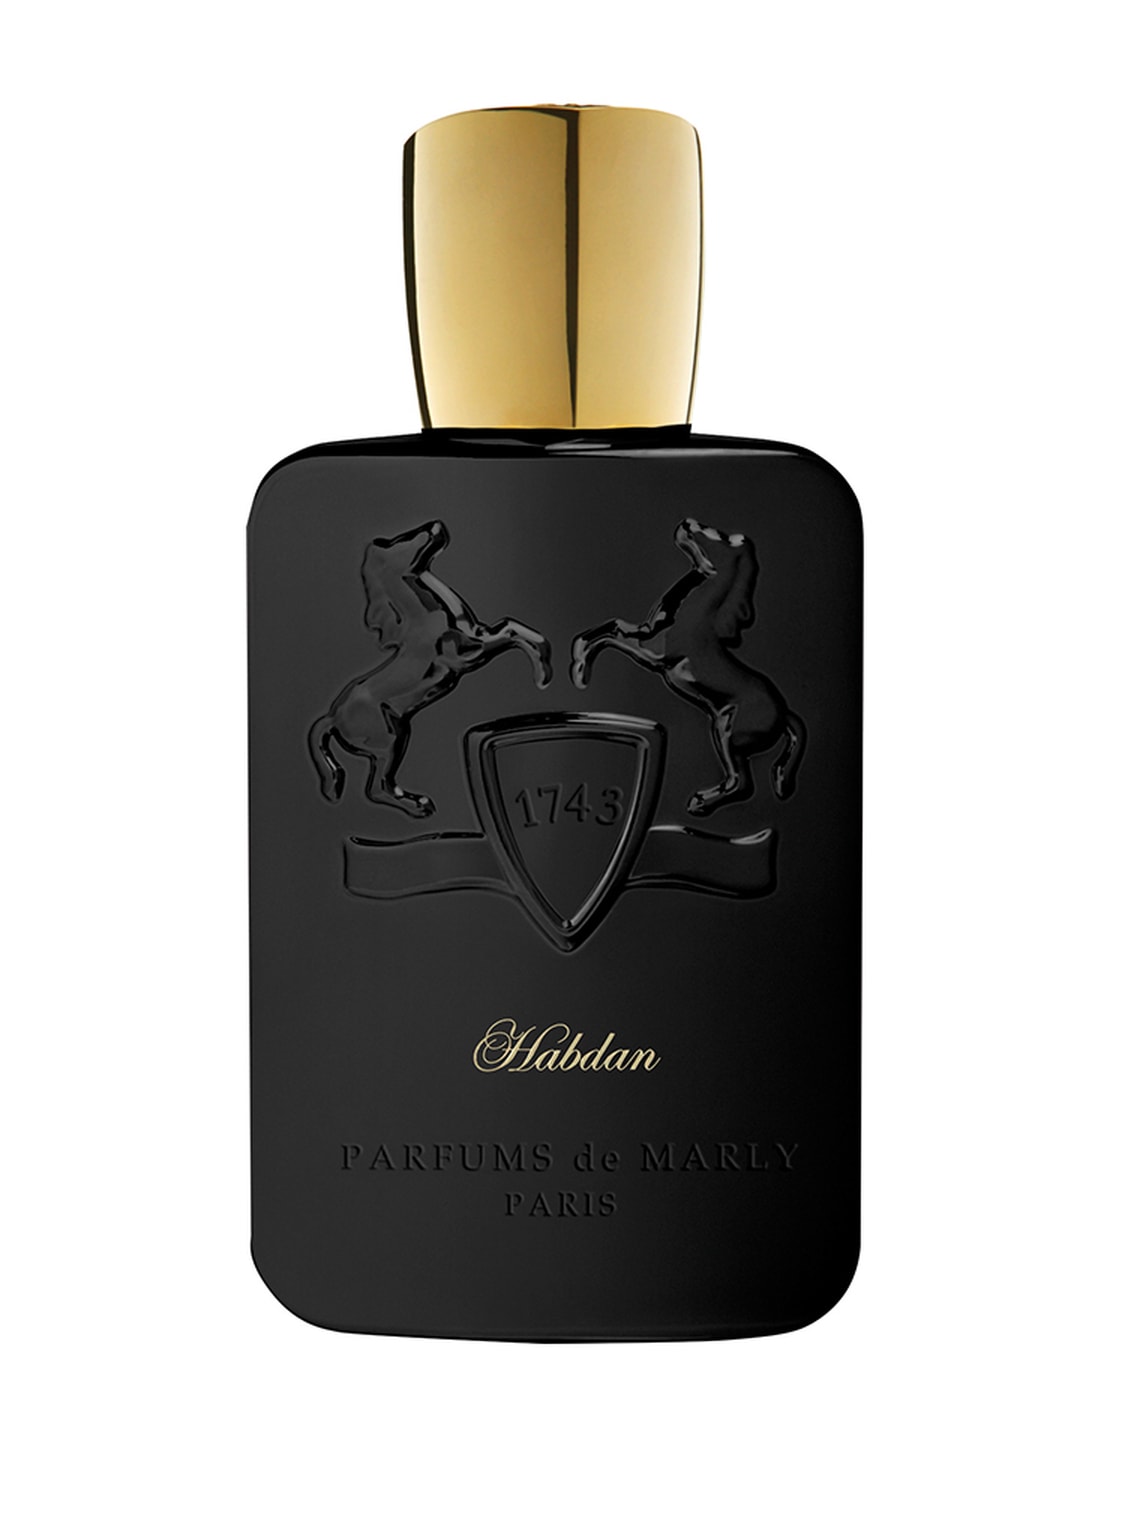 Parfums De Marly Habdan Eau de Parfum 125 ml von PARFUMS de MARLY